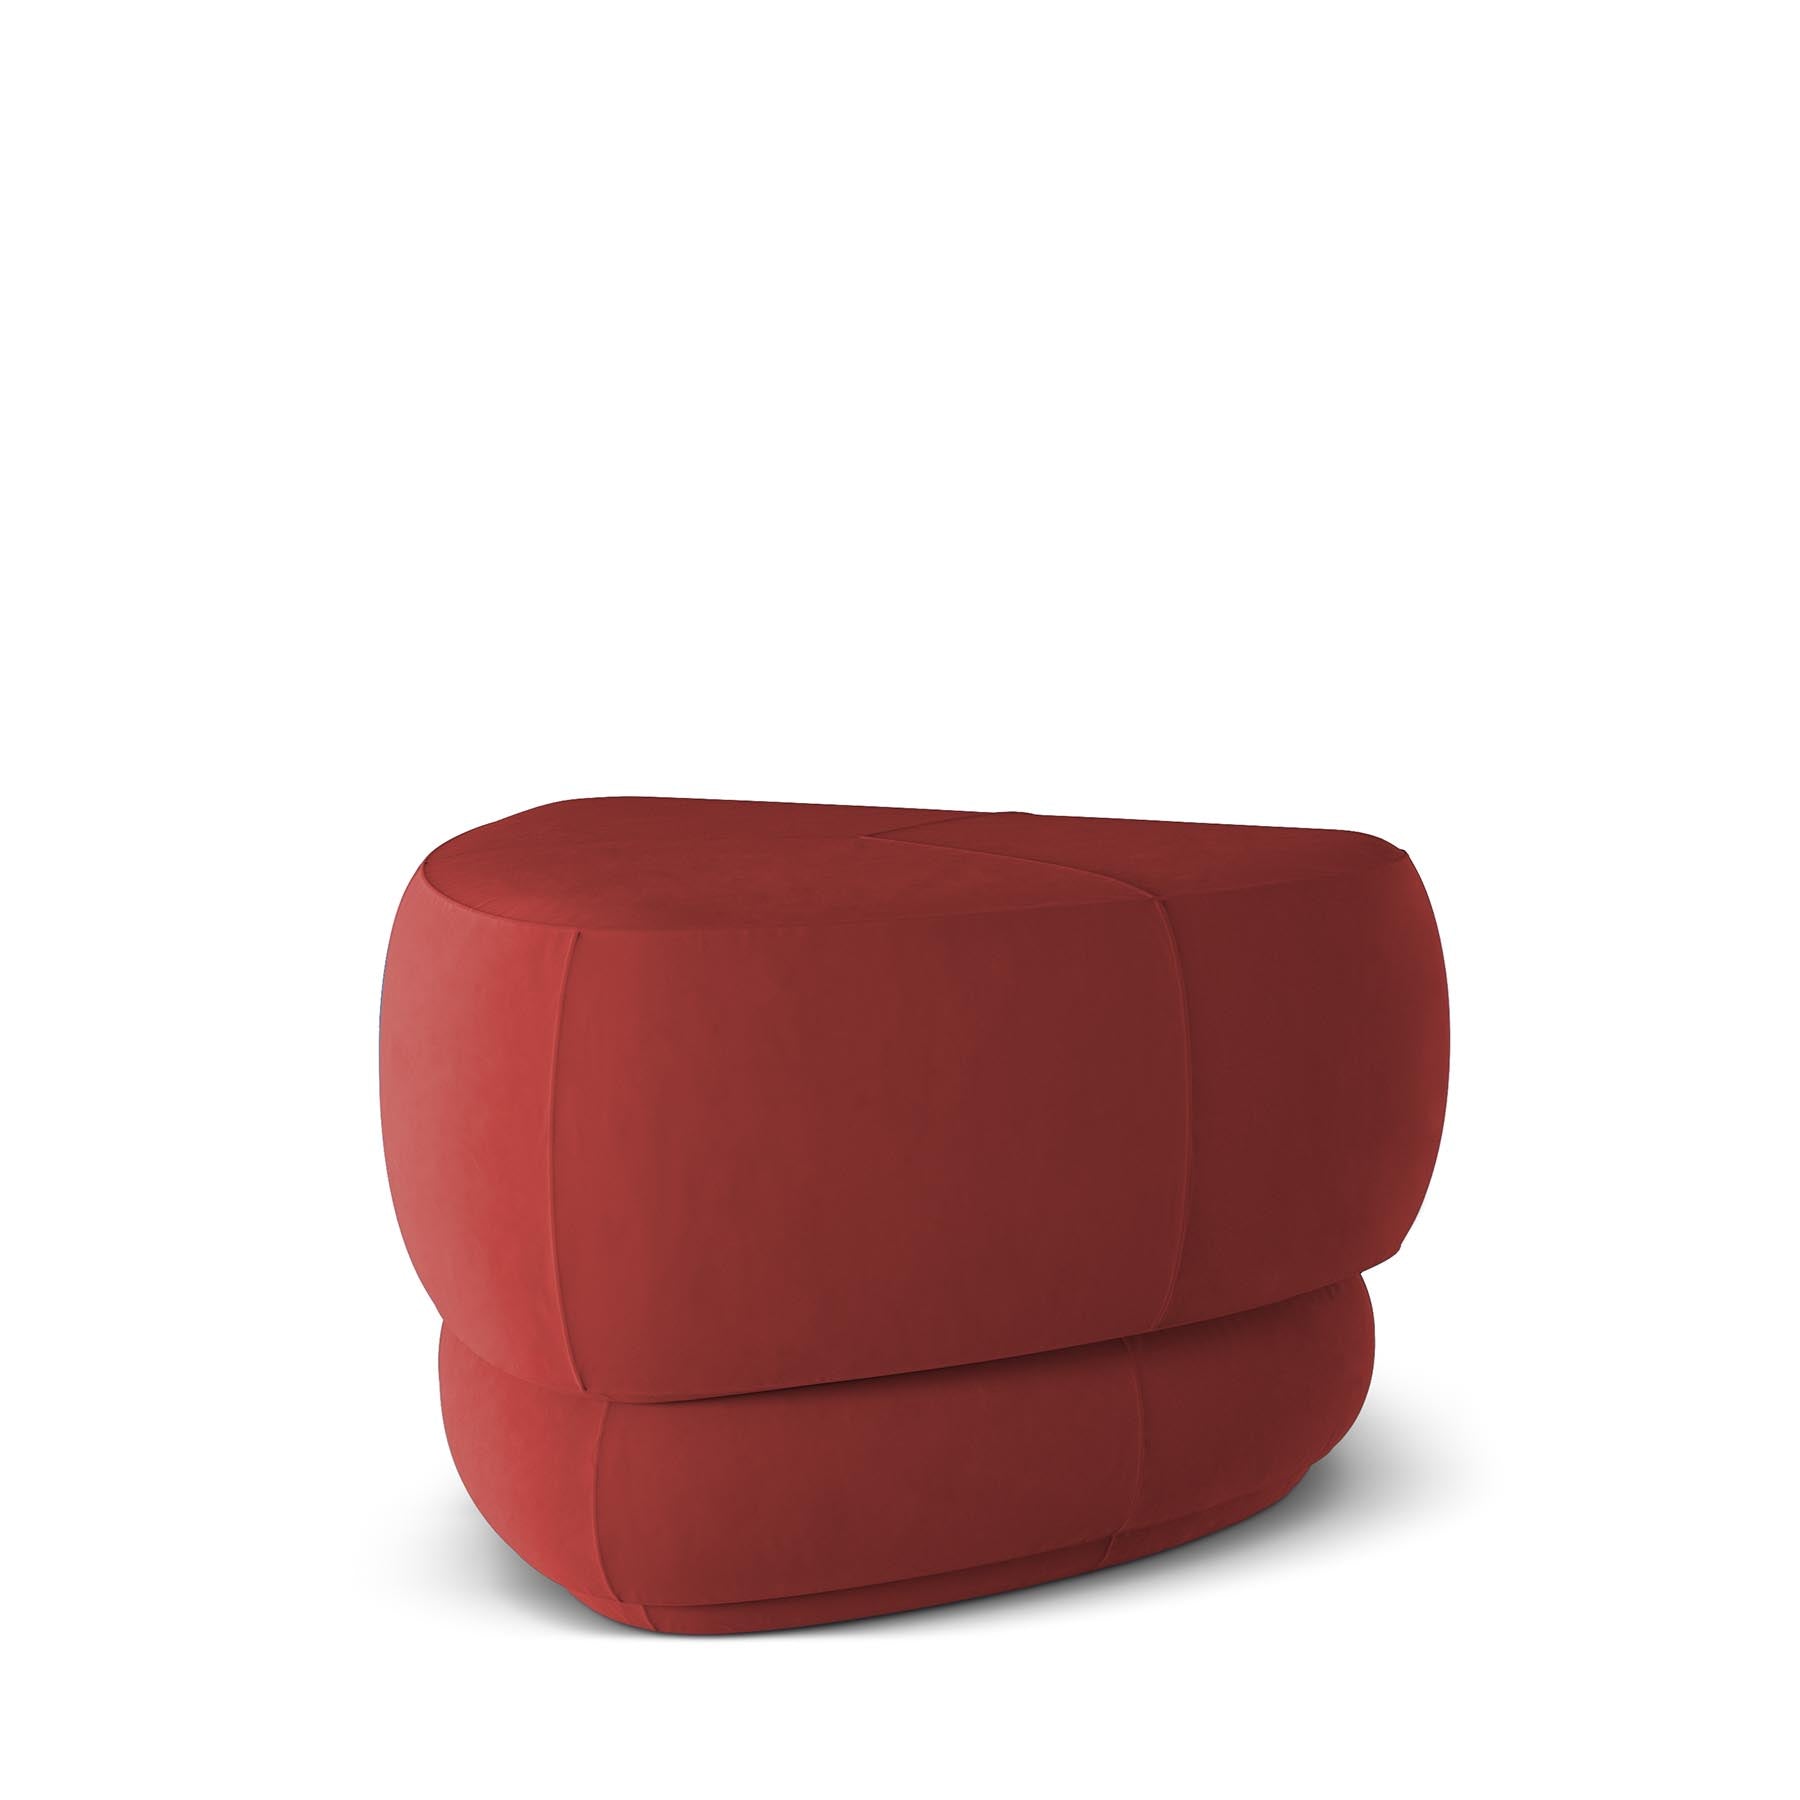 ABBE - POUF | Modern Furniture + Decor